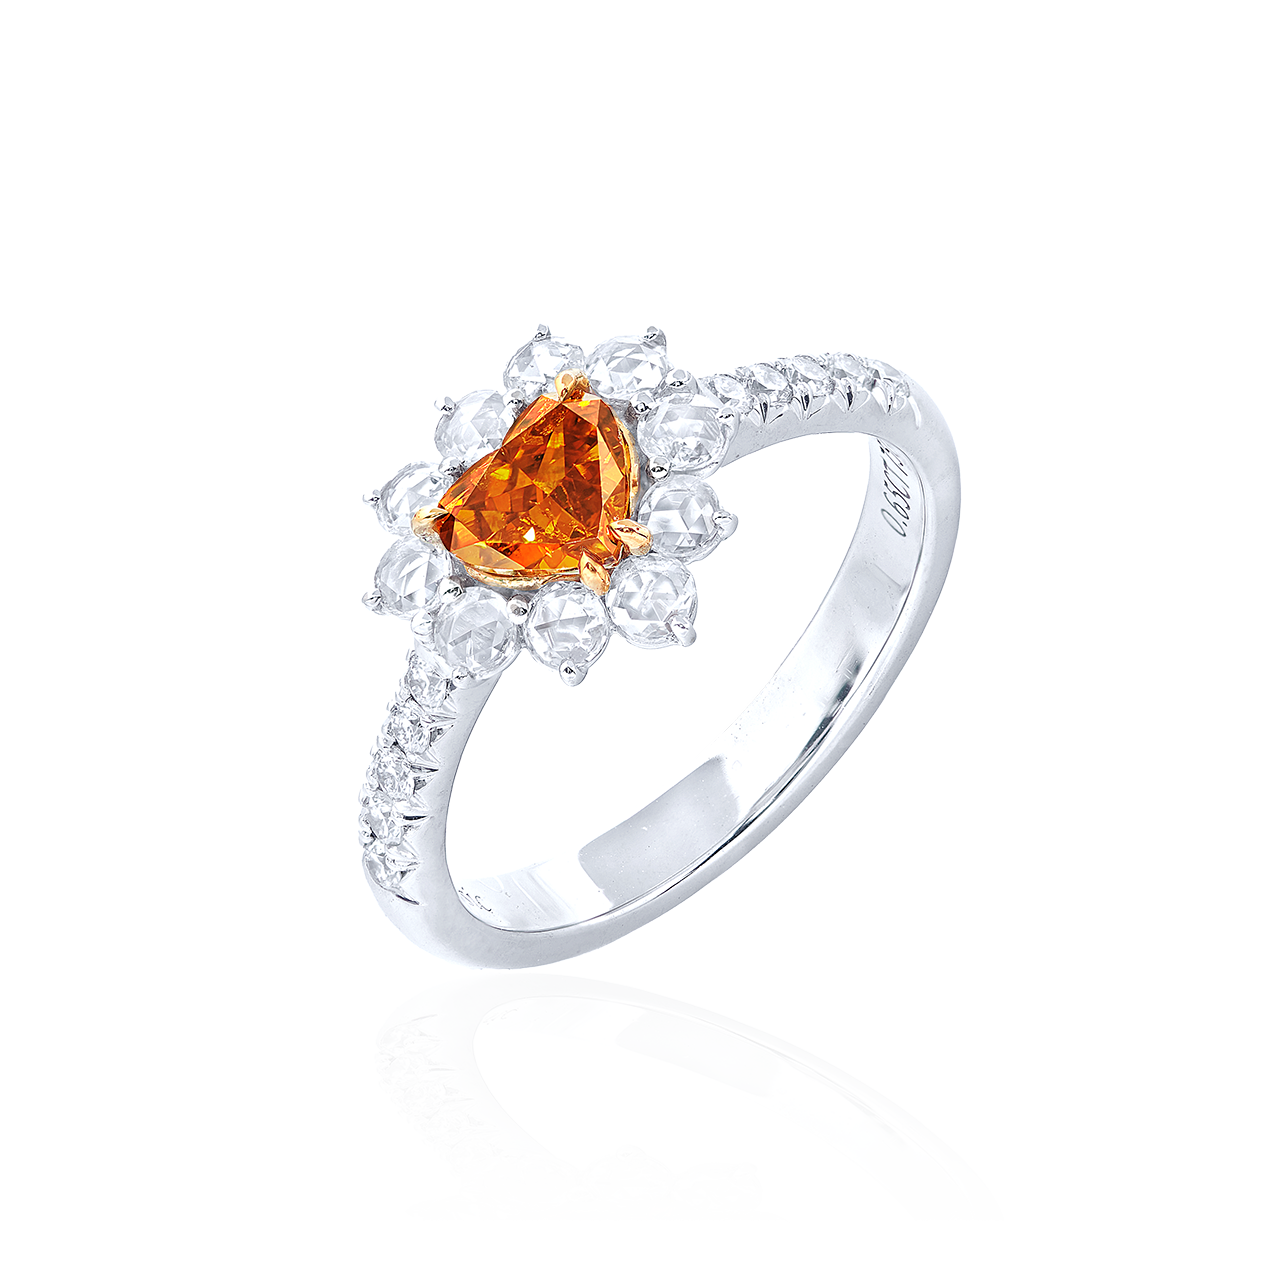 GIA 0.65克拉 深彩黃橘鑽戒
Fancy Deep Yellowish Orange Colored
Diamond Ring